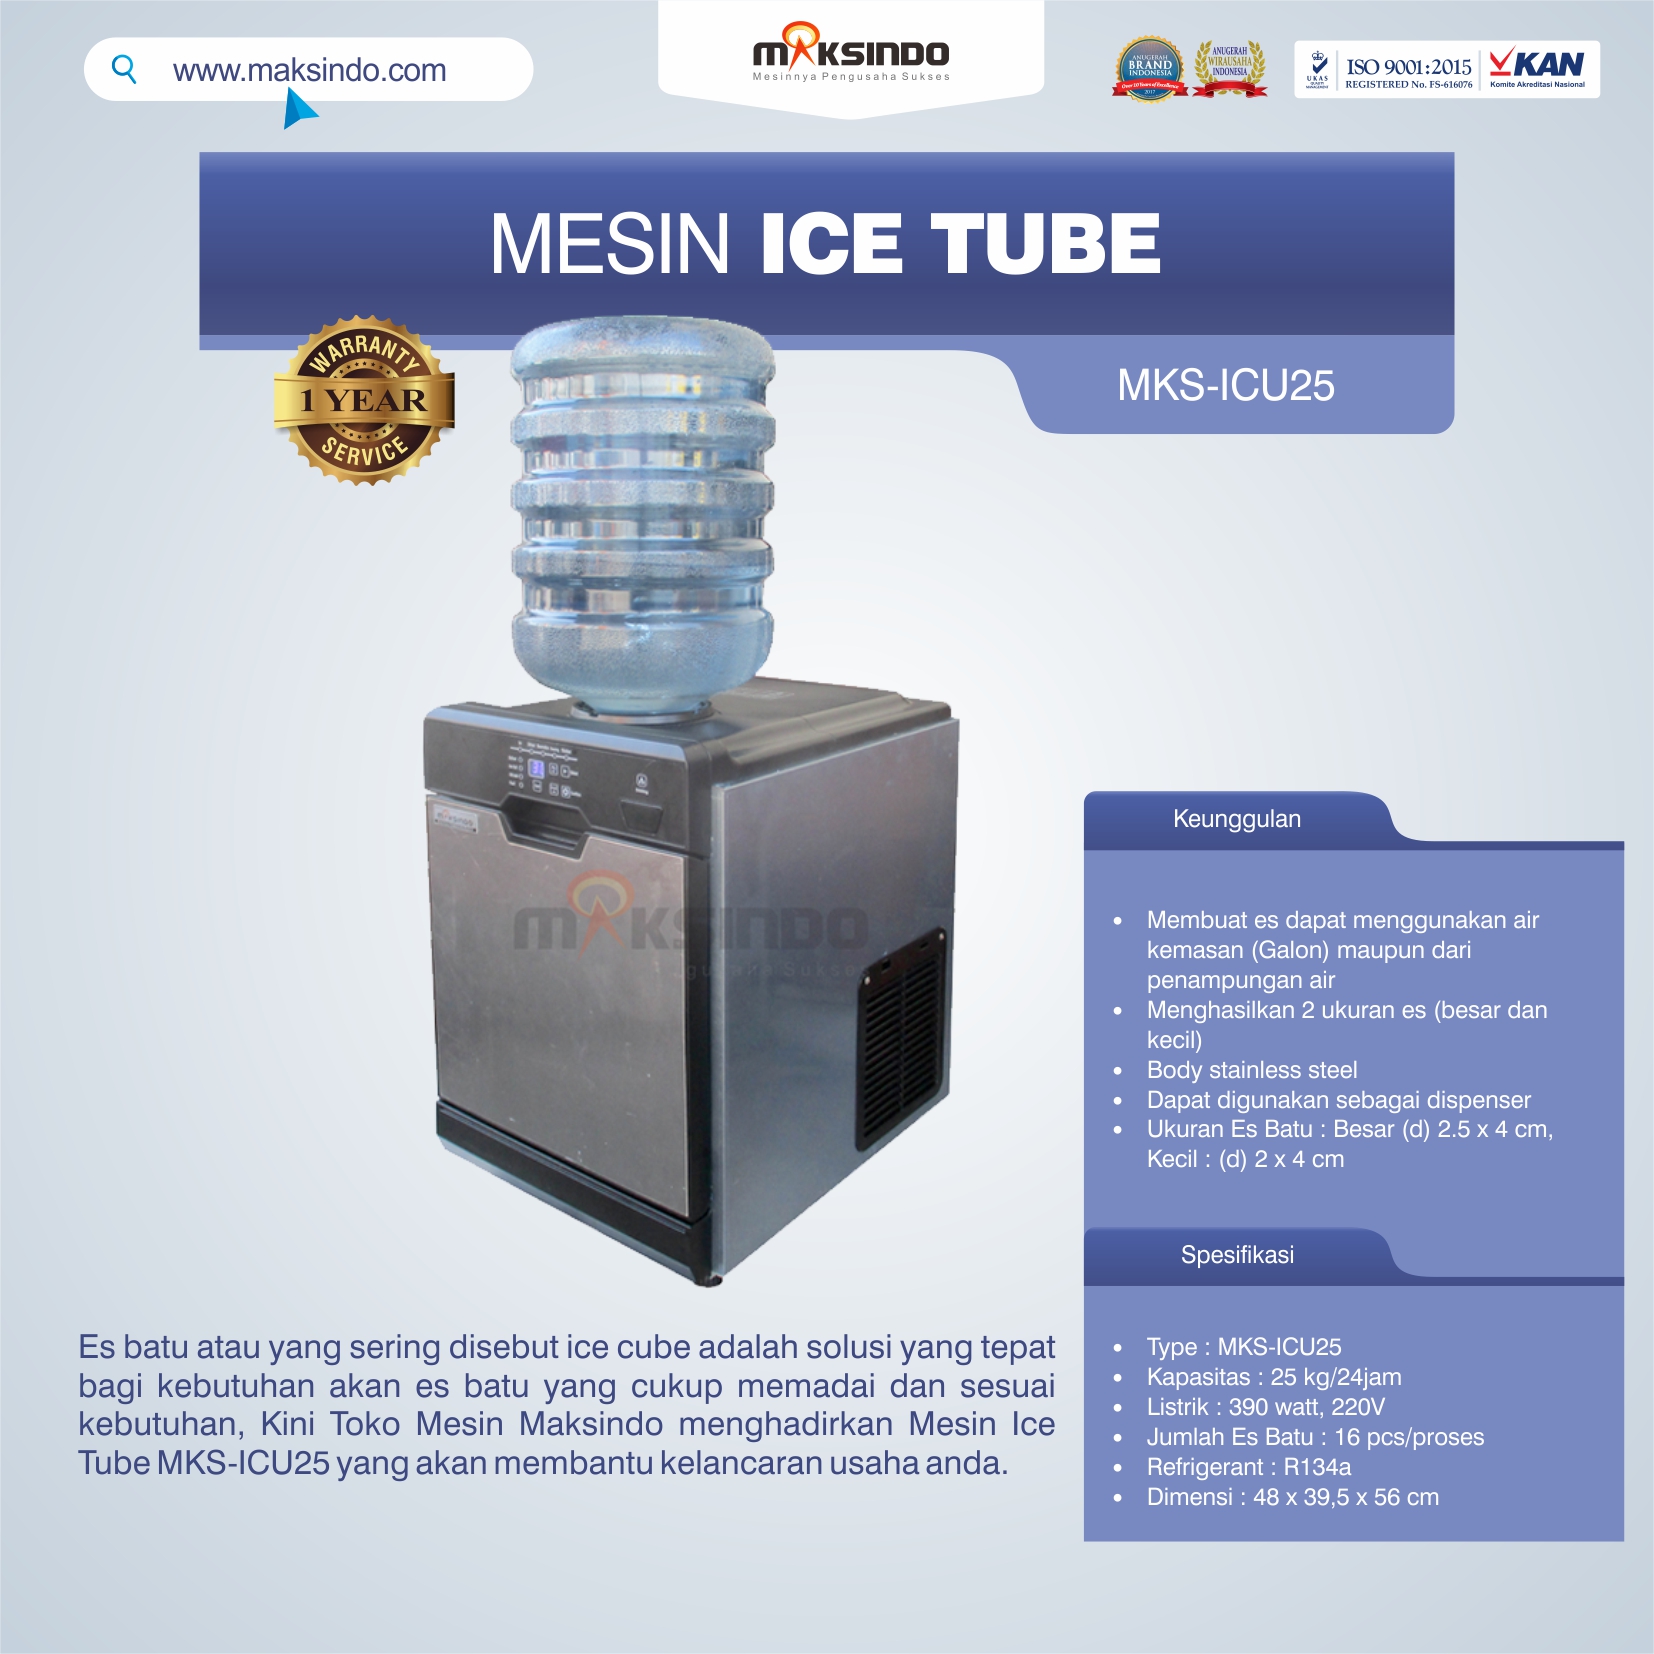 Jual Mesin Ice Tube MKS-ICU25 di Bekasi